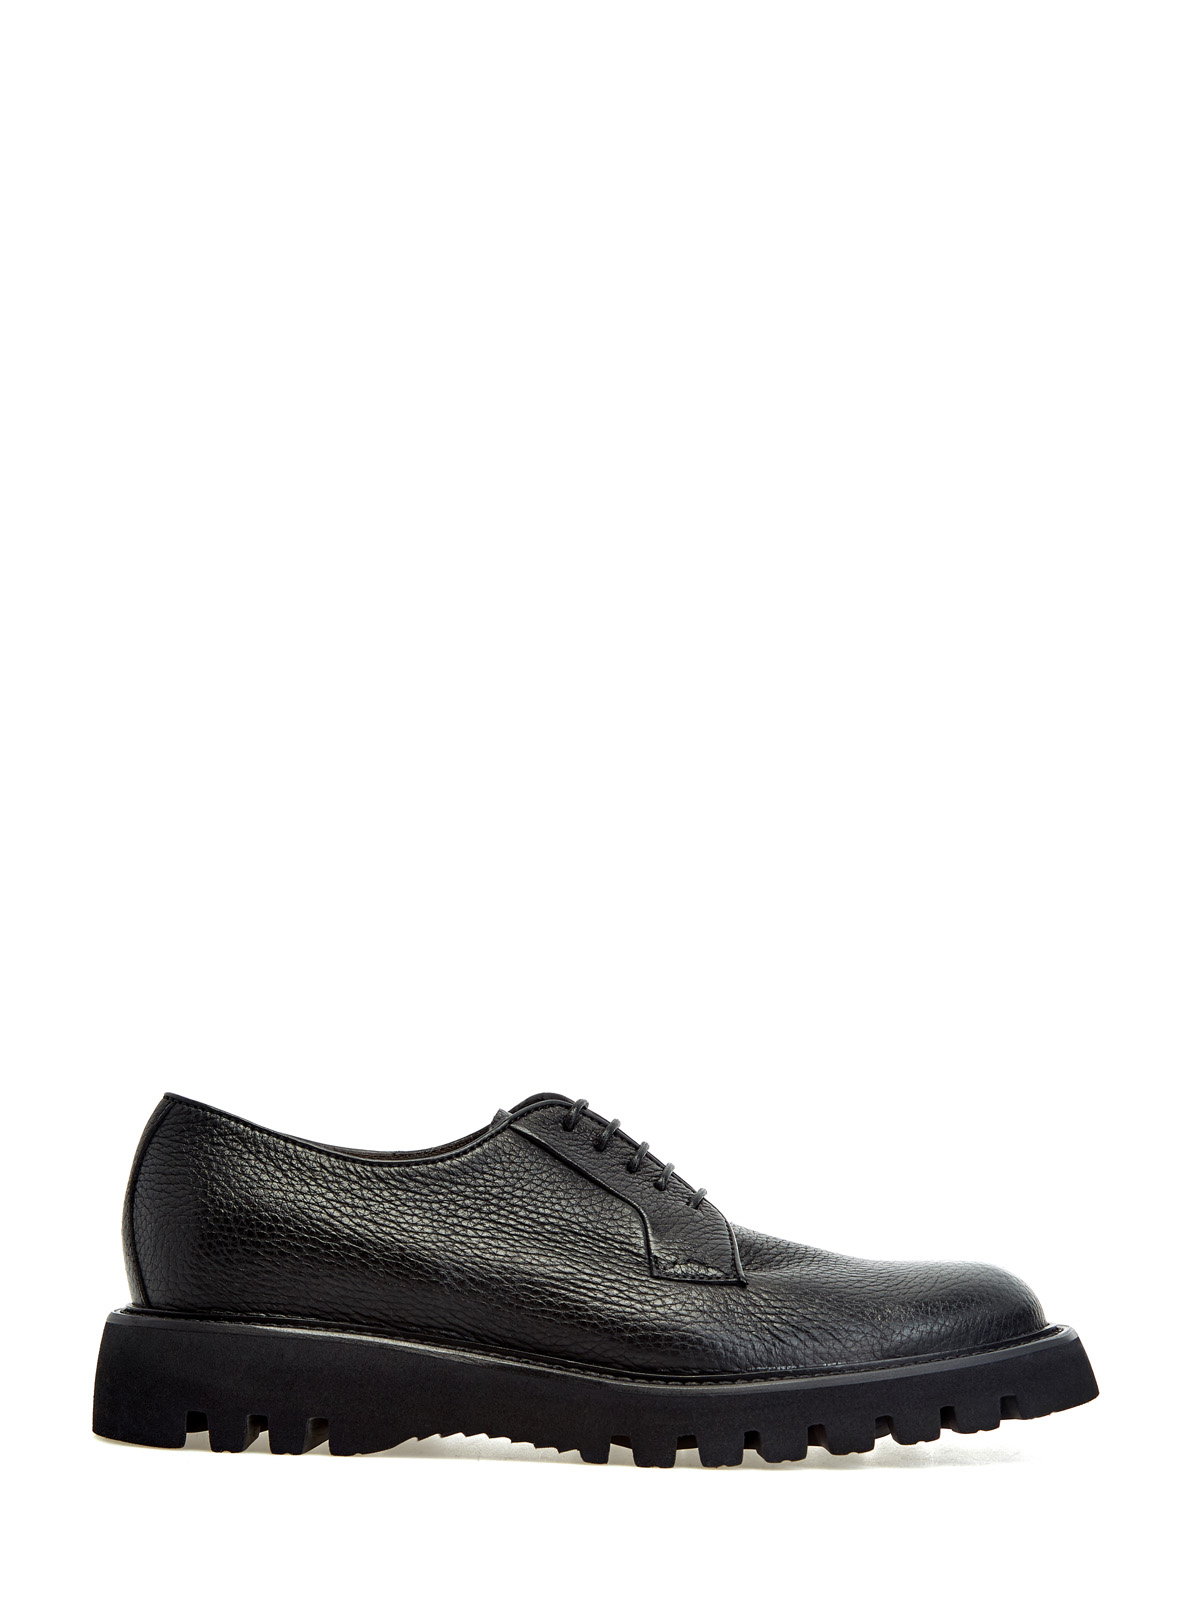 Кожаные ботинки-дерби на массивной подошве BARRETT, цвет черный, размер 40.5;41;41.5;42.5;43;43.5;44;45